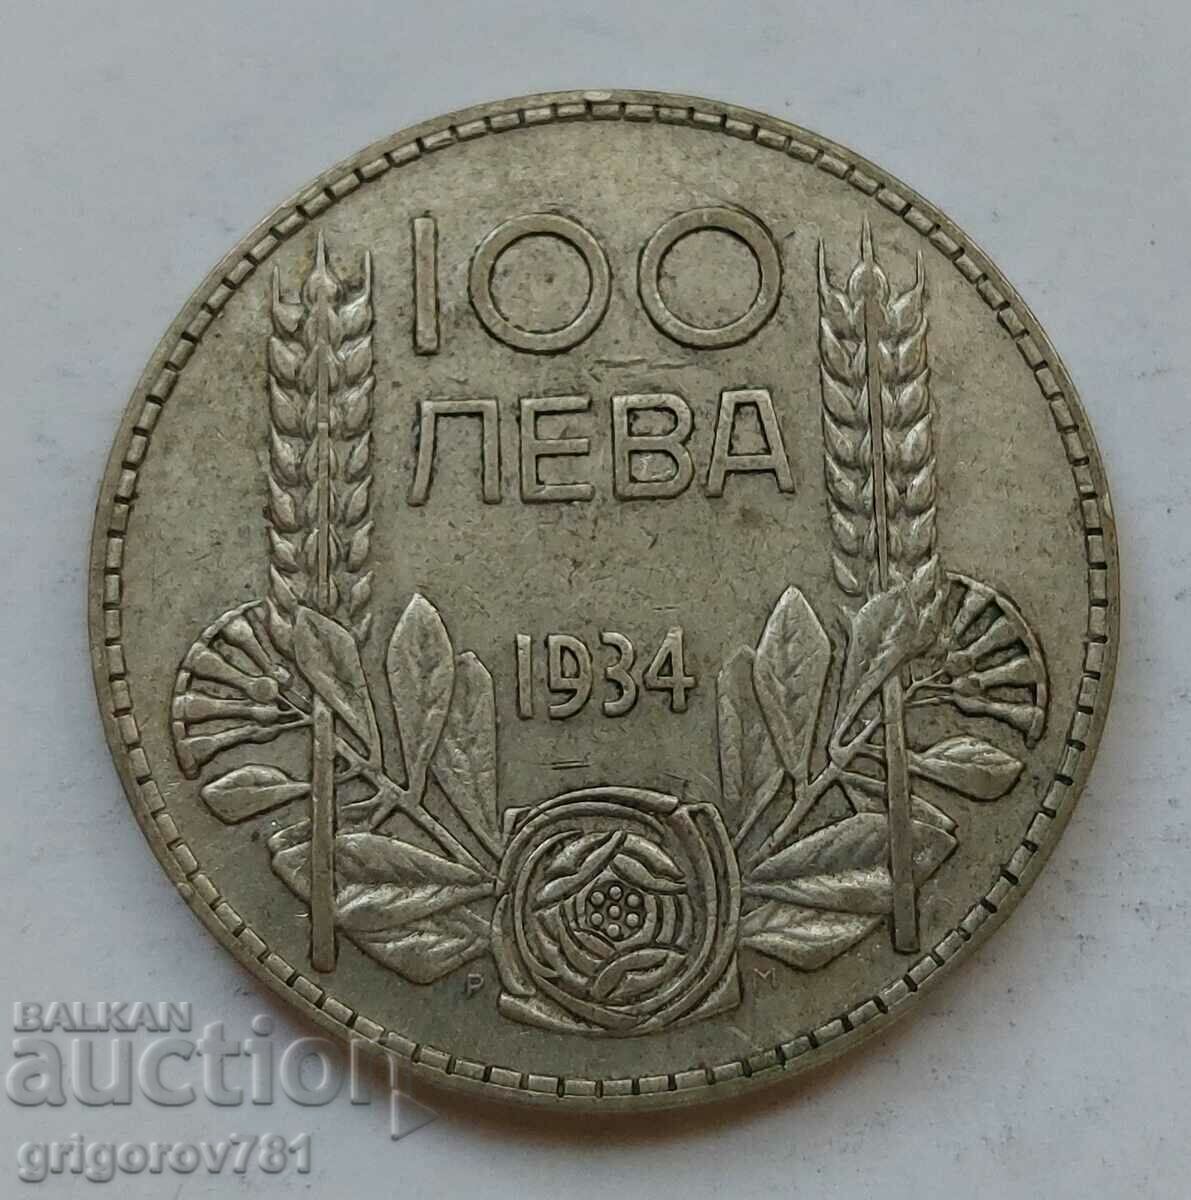 100 leva silver Bulgaria 1934 - silver coin #152